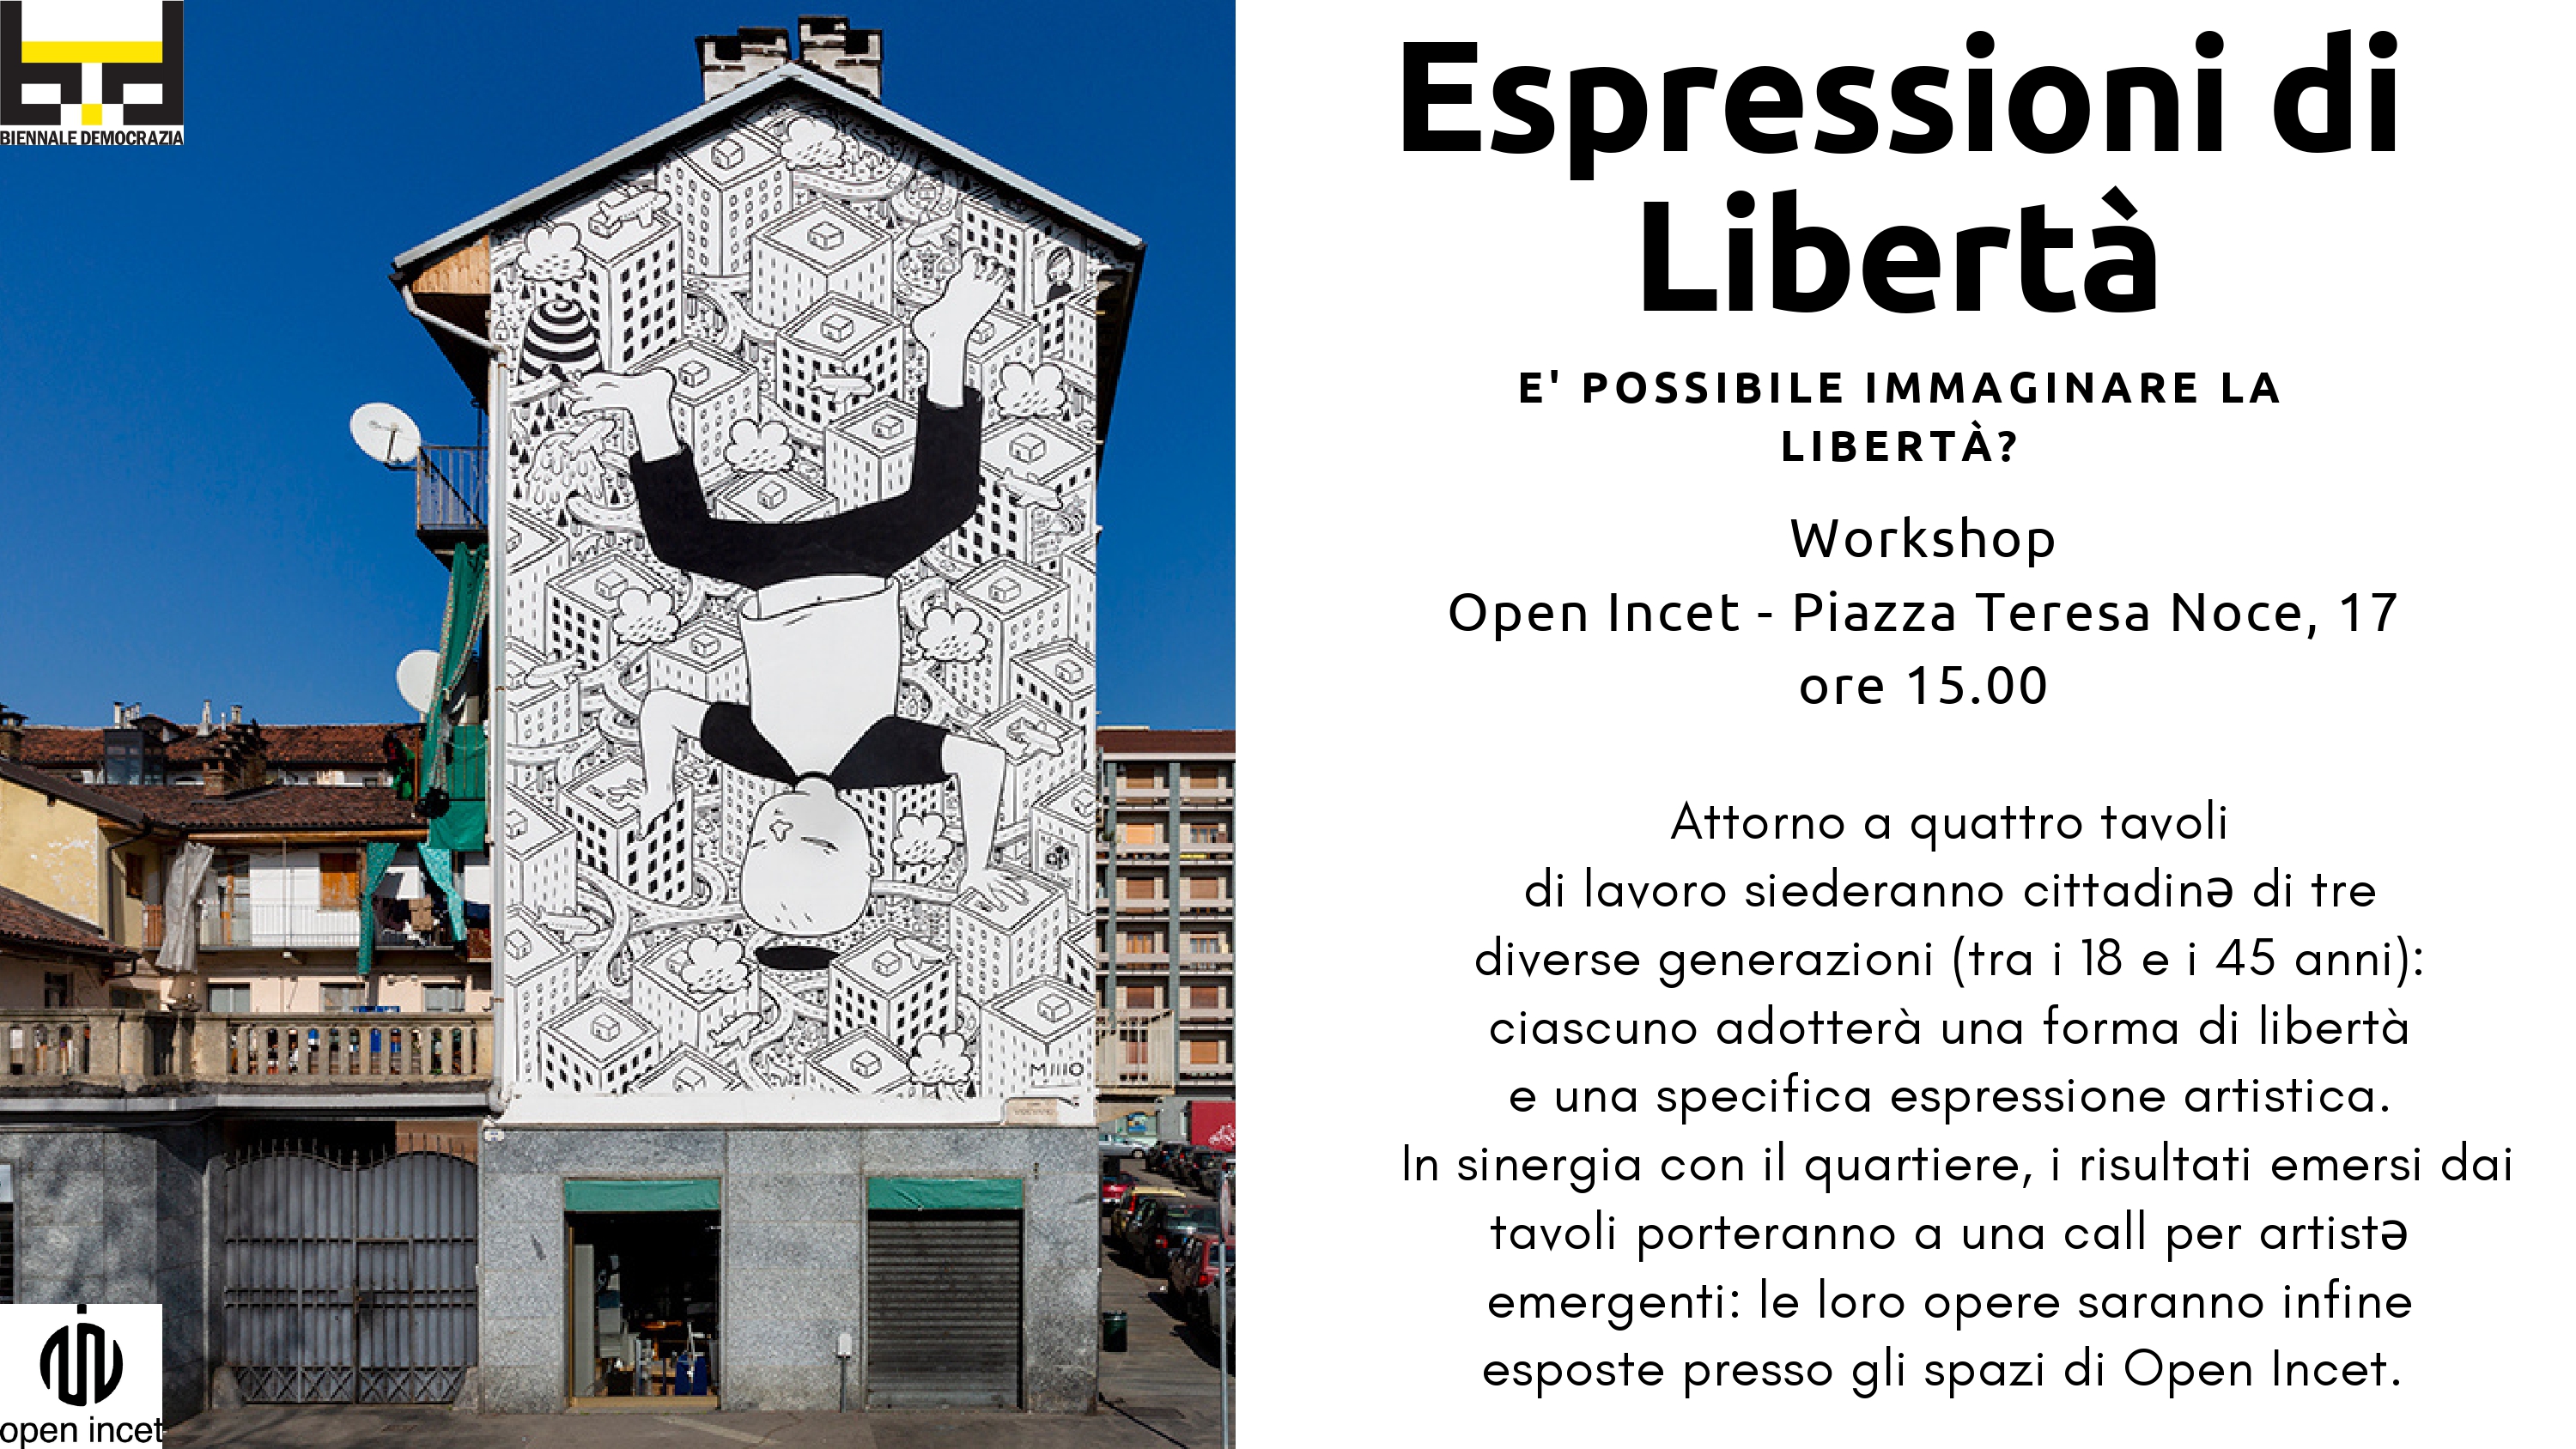 Biennale Democrazia - Espressioni di libertà